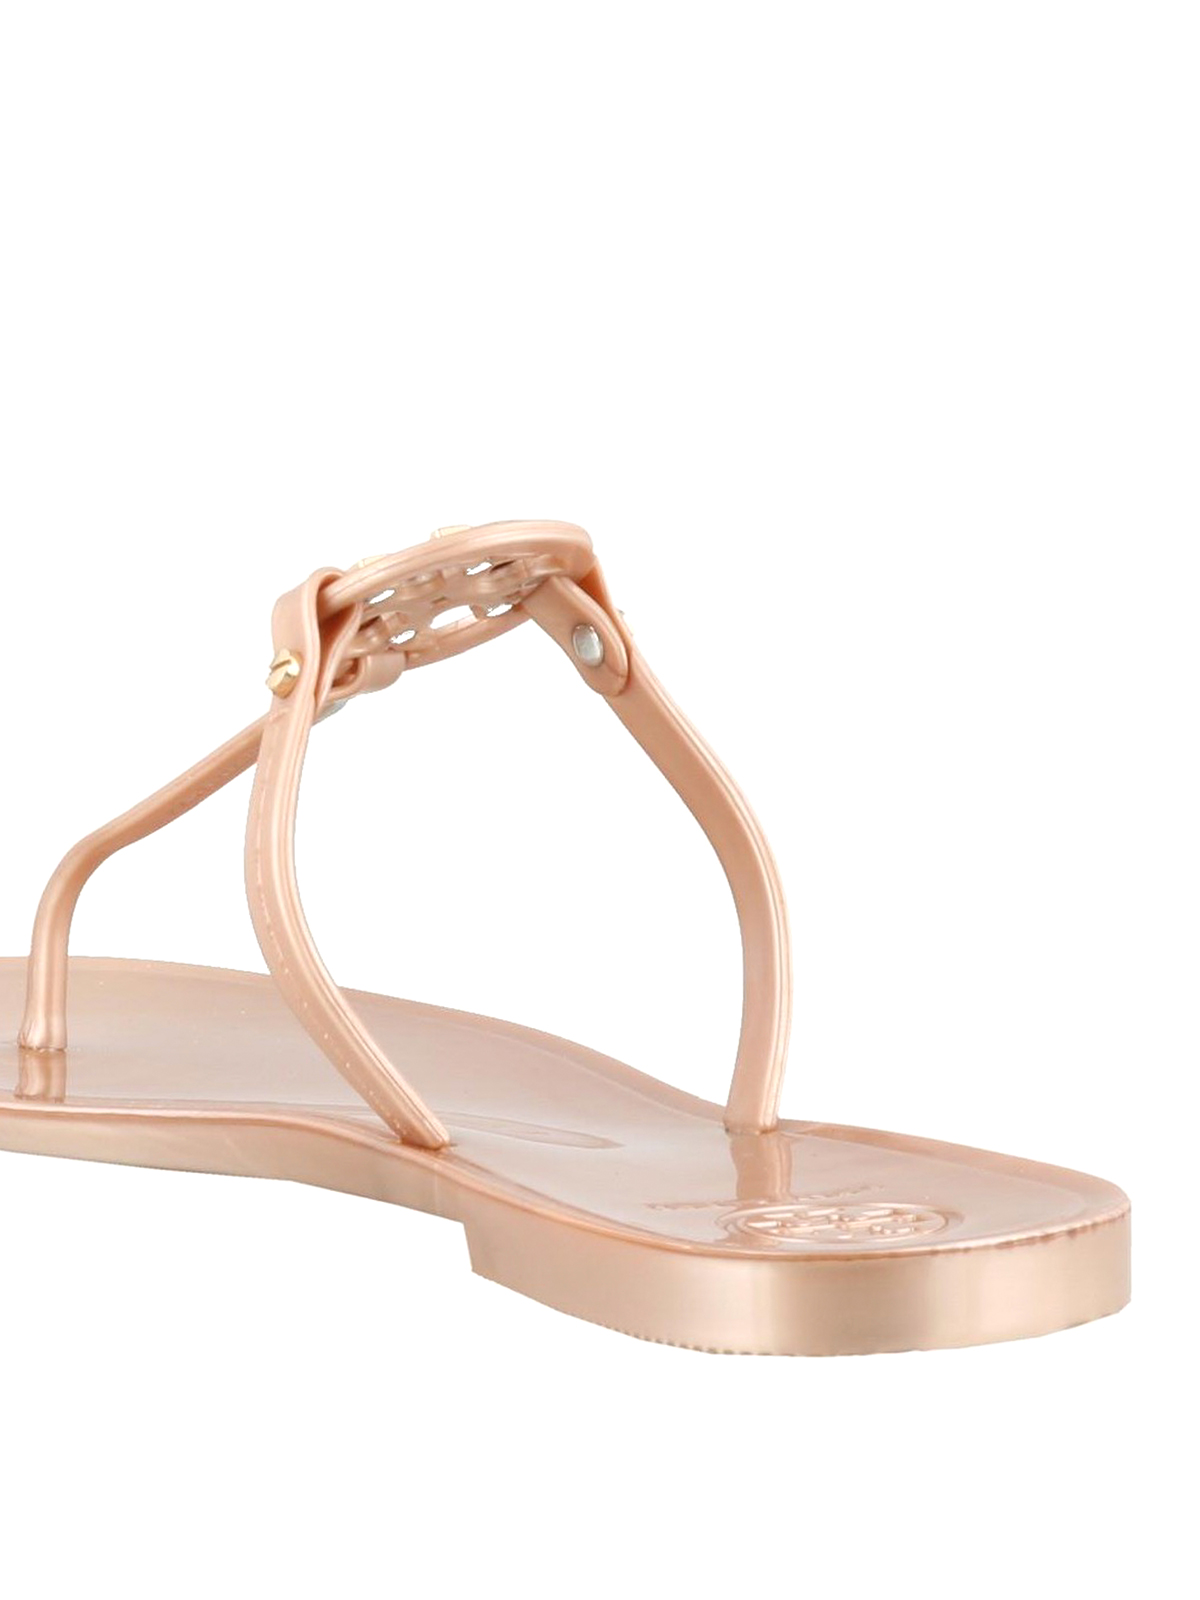 Mini Miller Jelly Sandal: Women's Designer Sandals